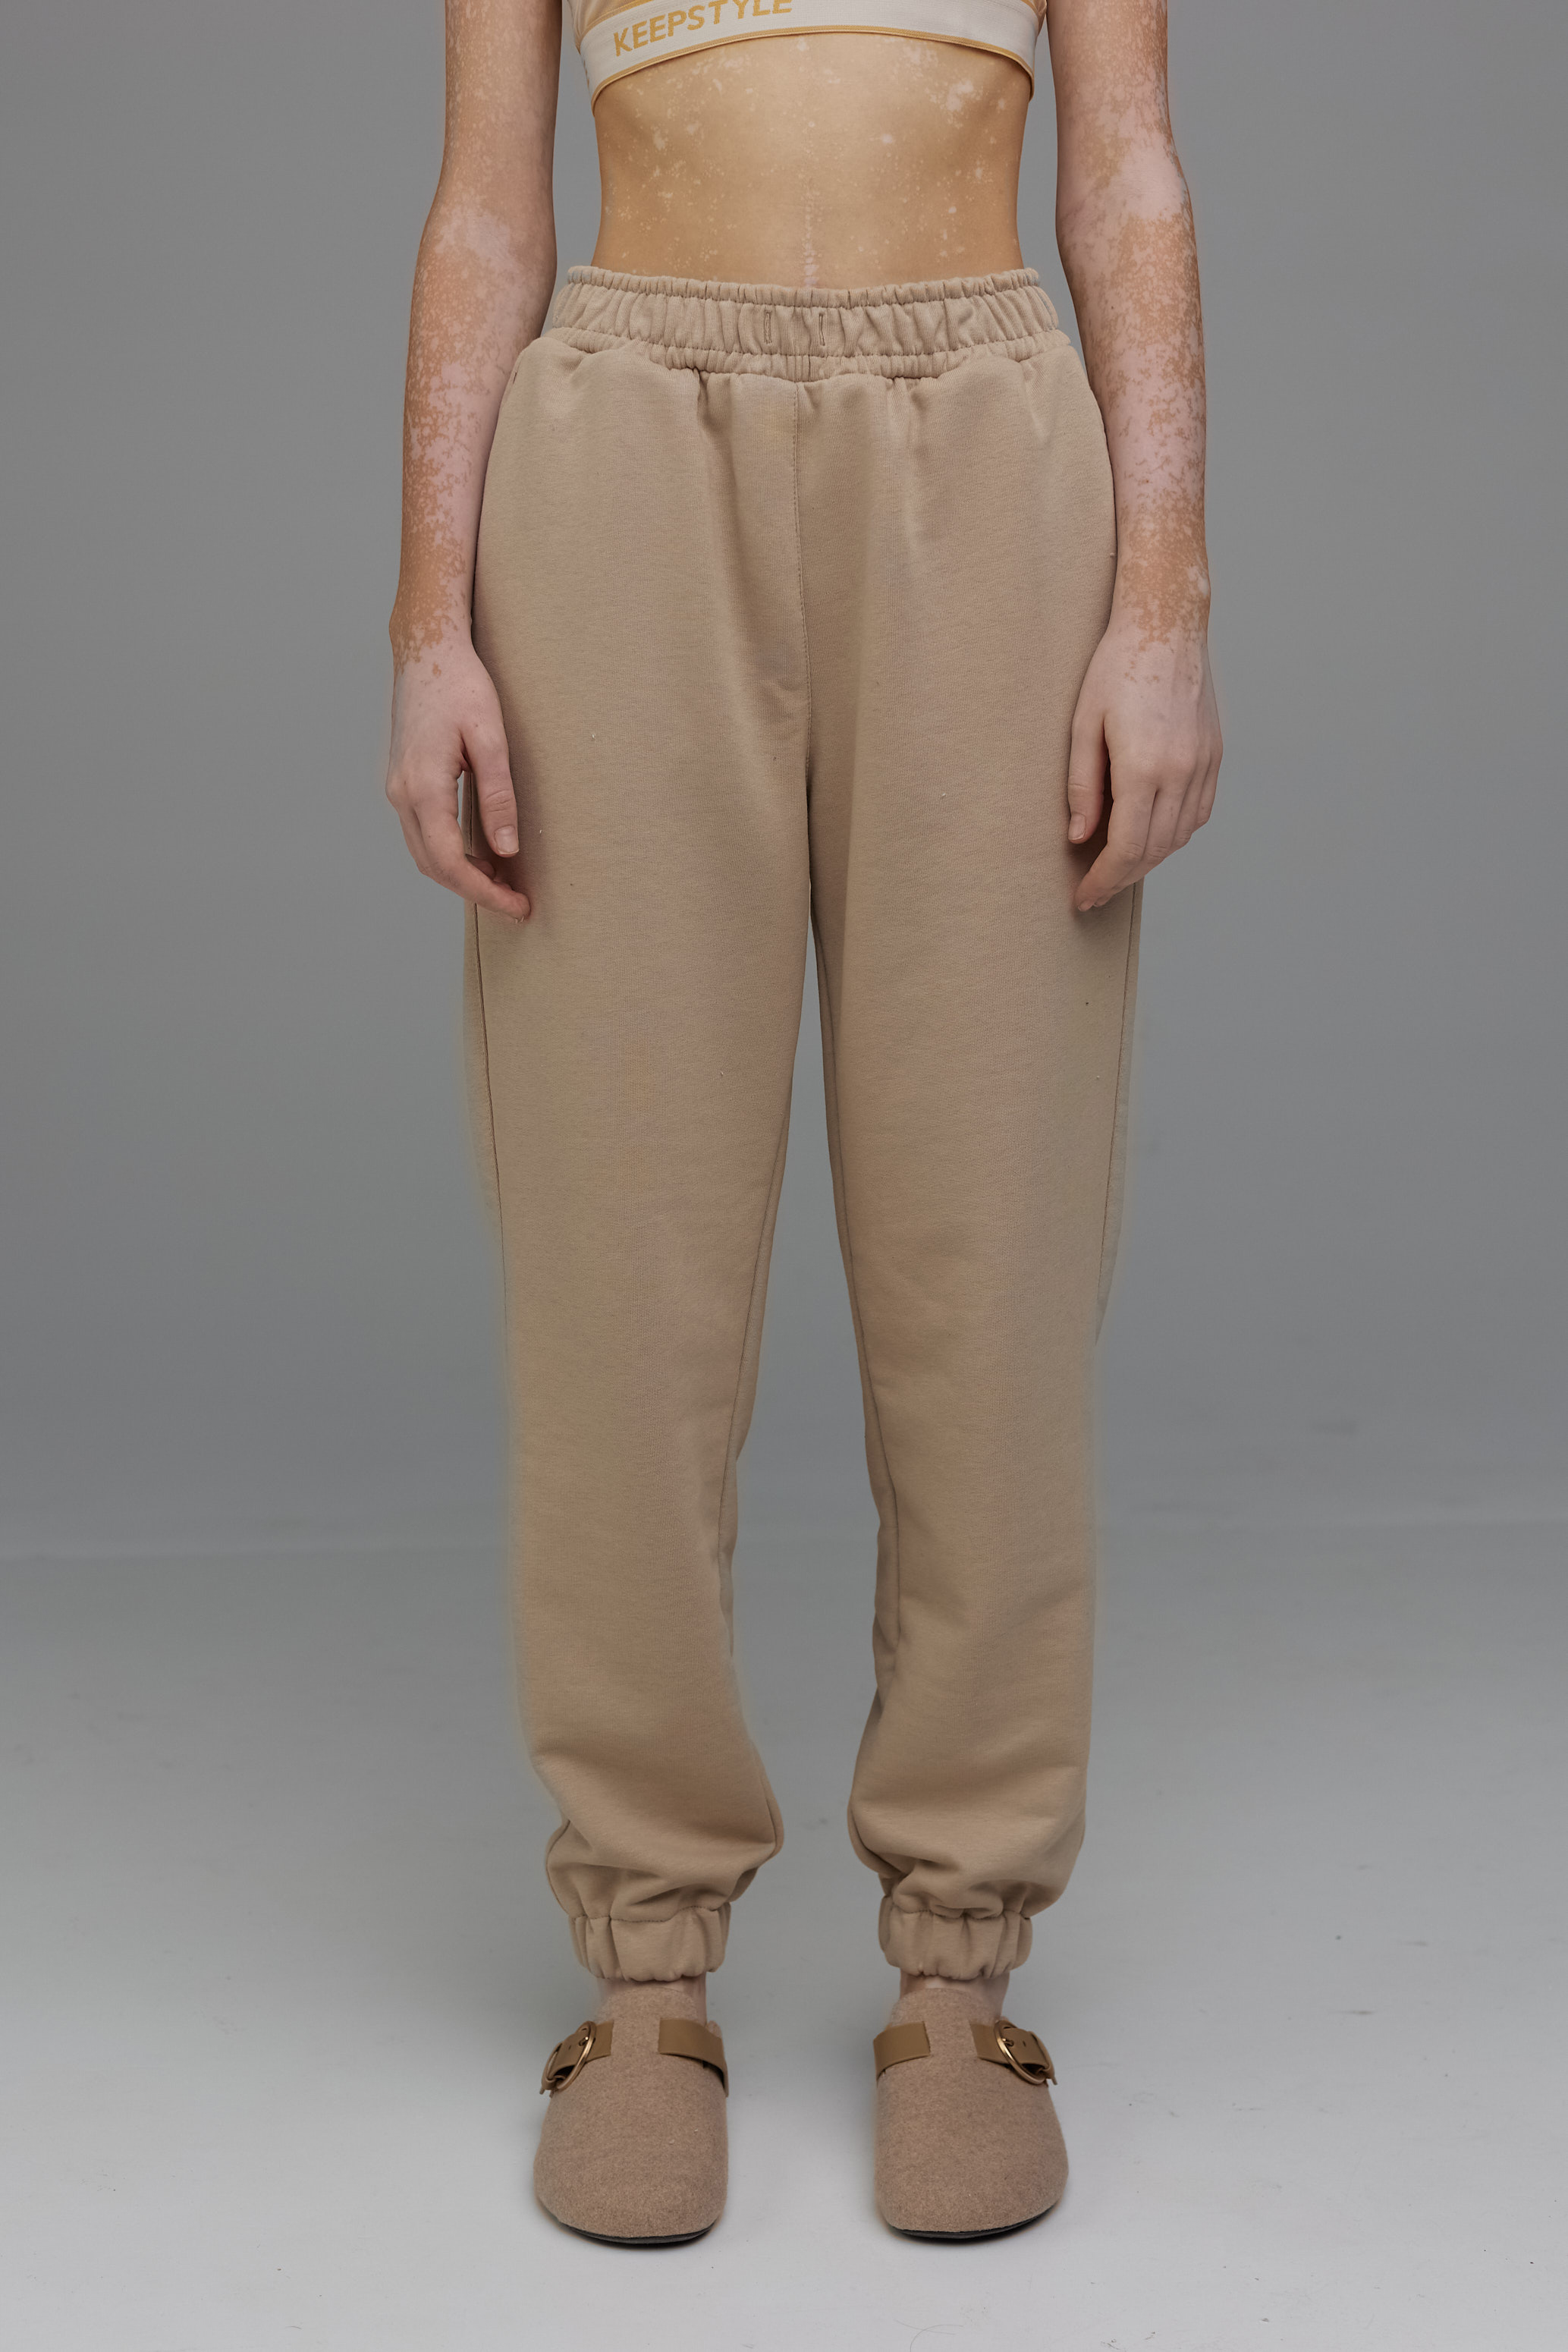 unisex pants in dust color